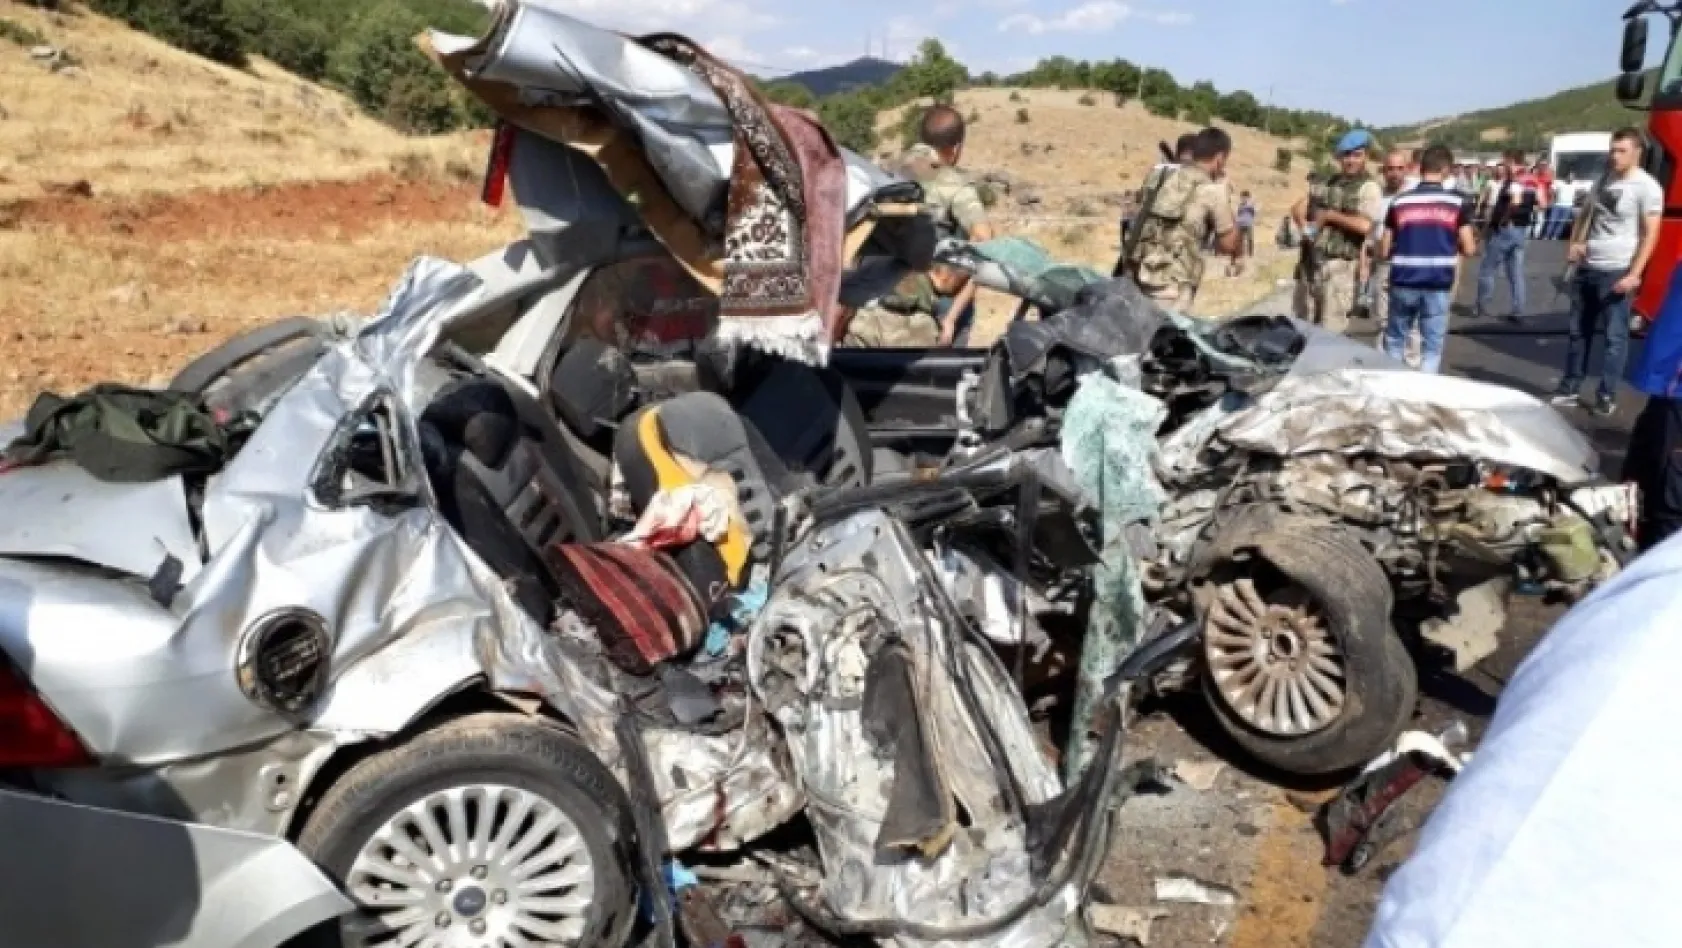 Bingöl'deki kazada ölen 8 kişinin isimleri belli oldu